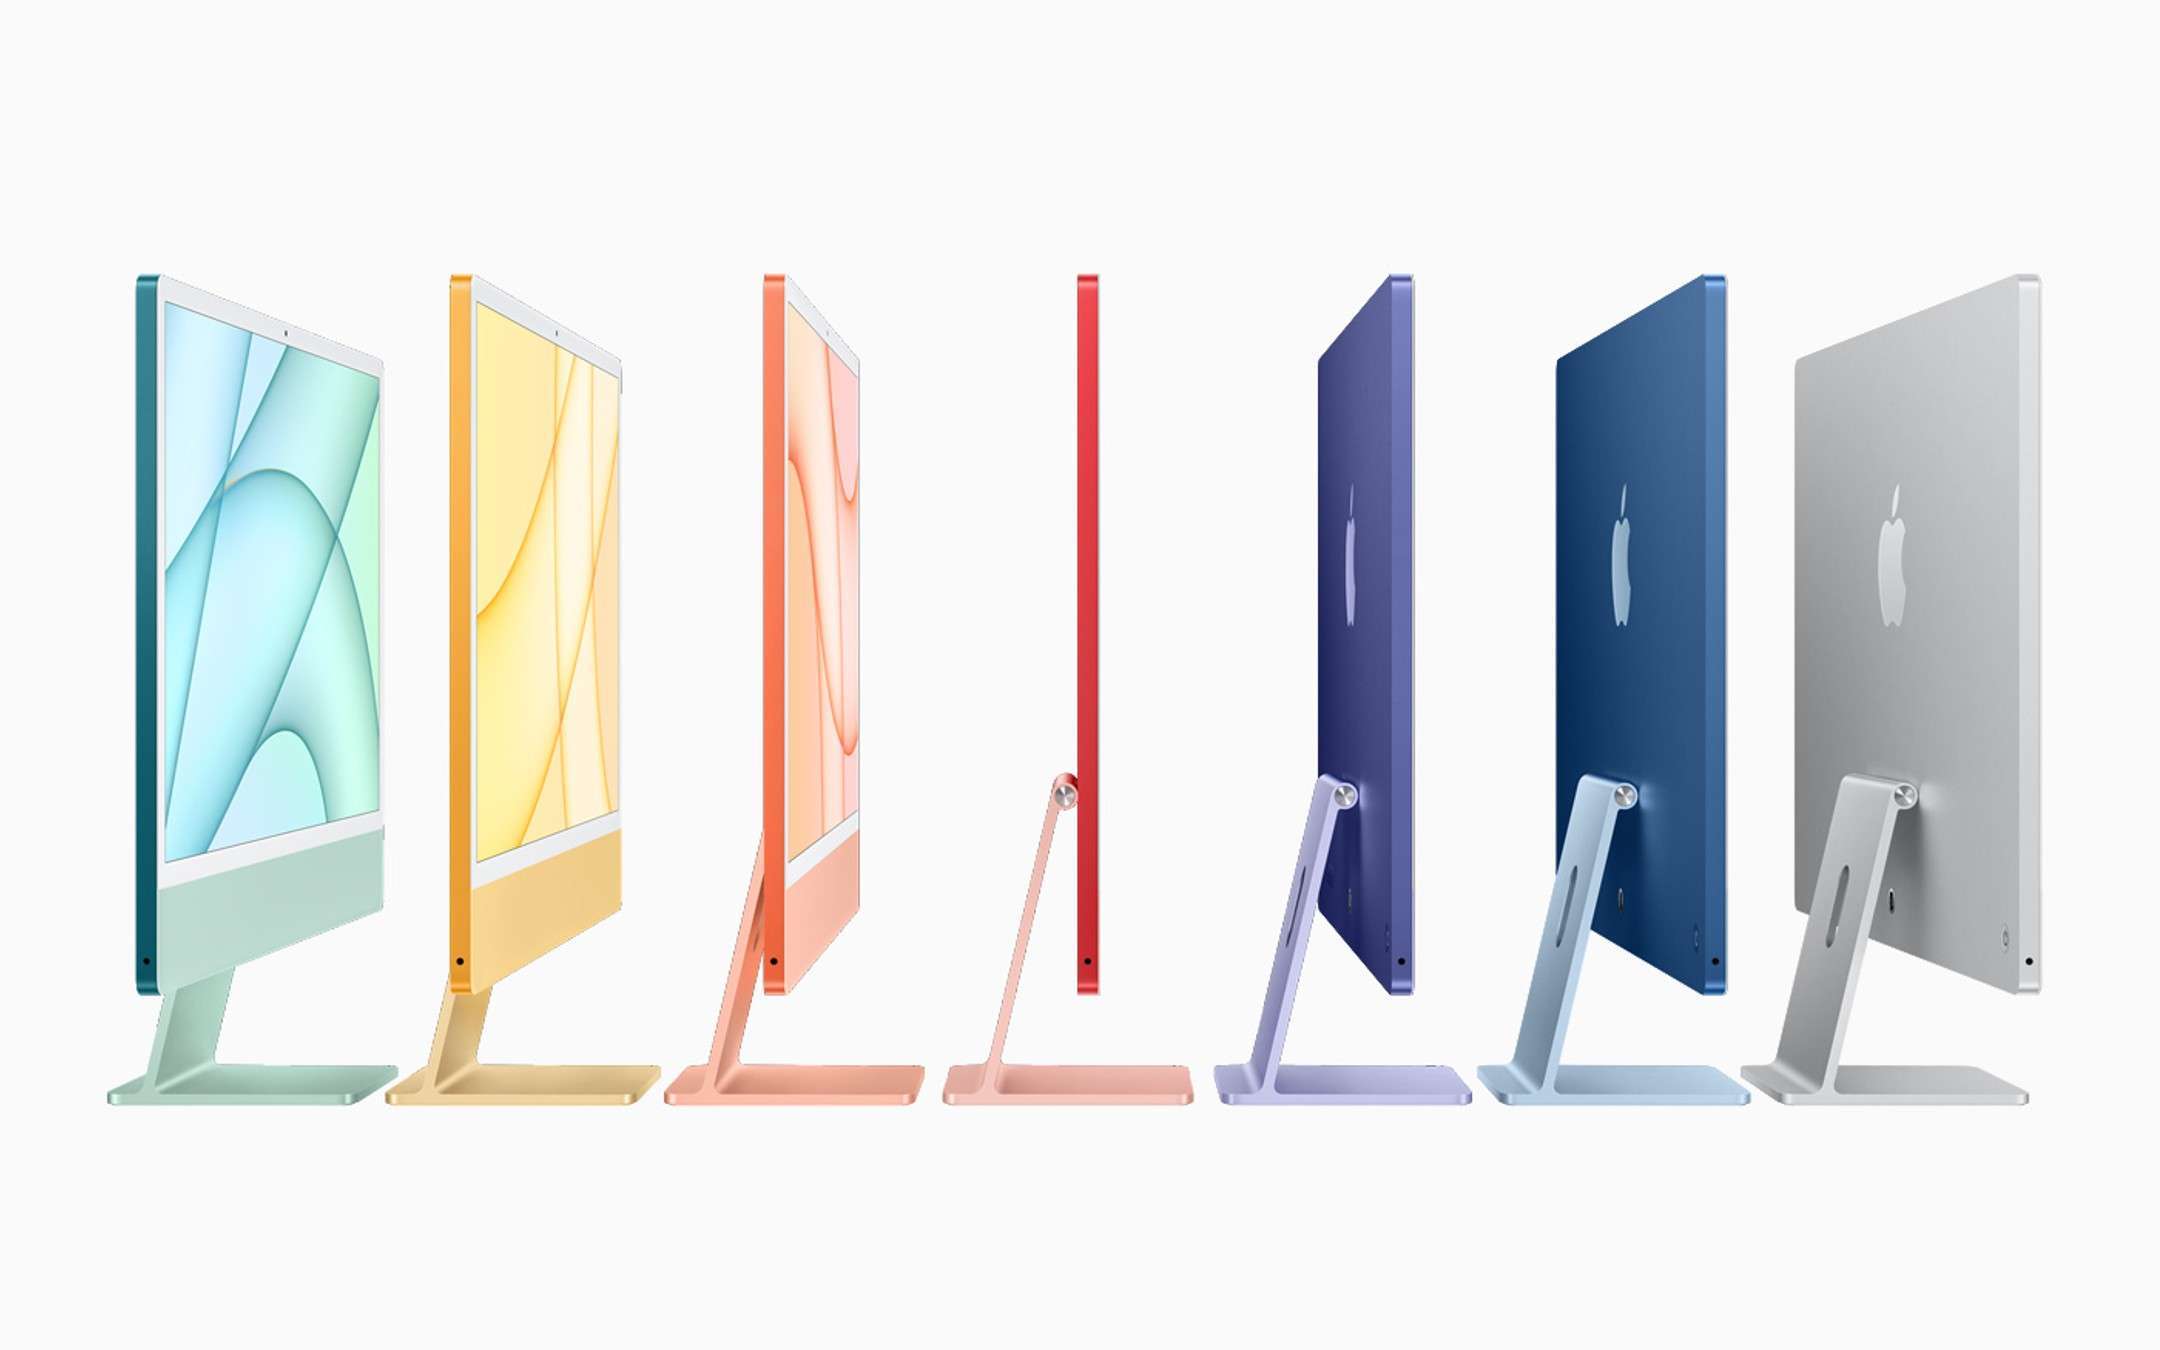 Arrivano i nuovi iMac: non sottovalutare il colore